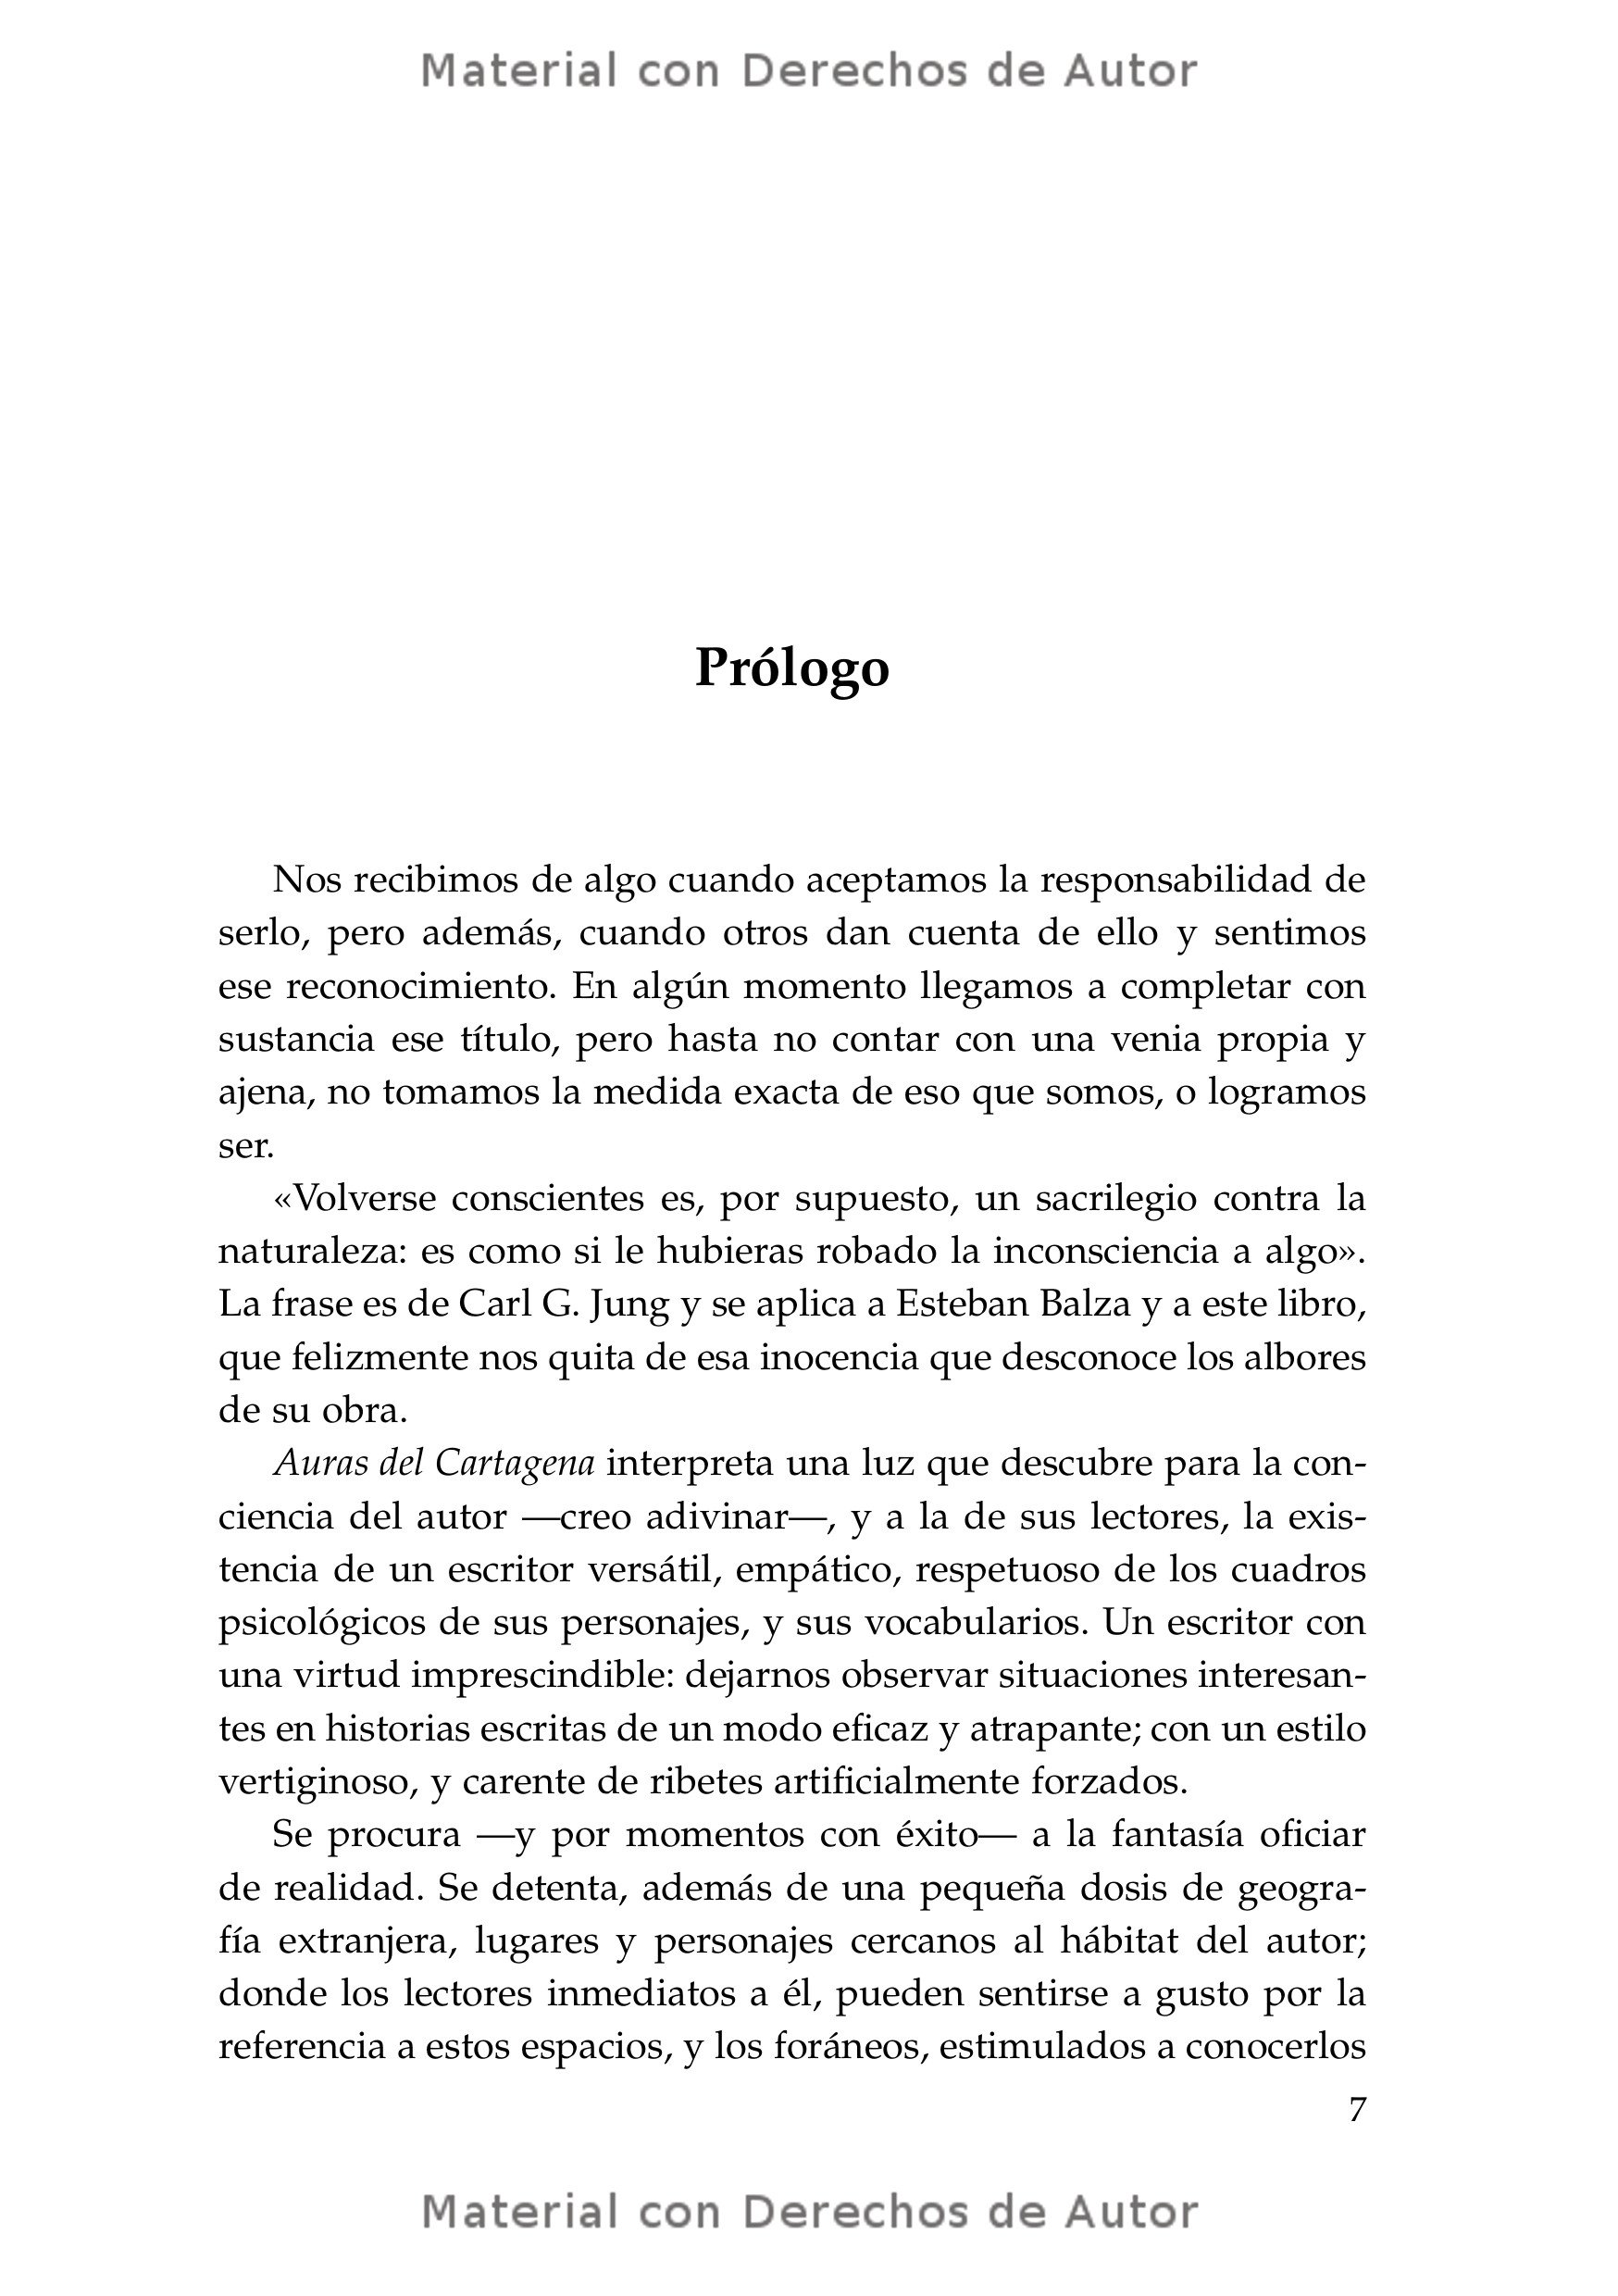 Interior del Libro: Auras del Cartagena de Esteban Balza 03